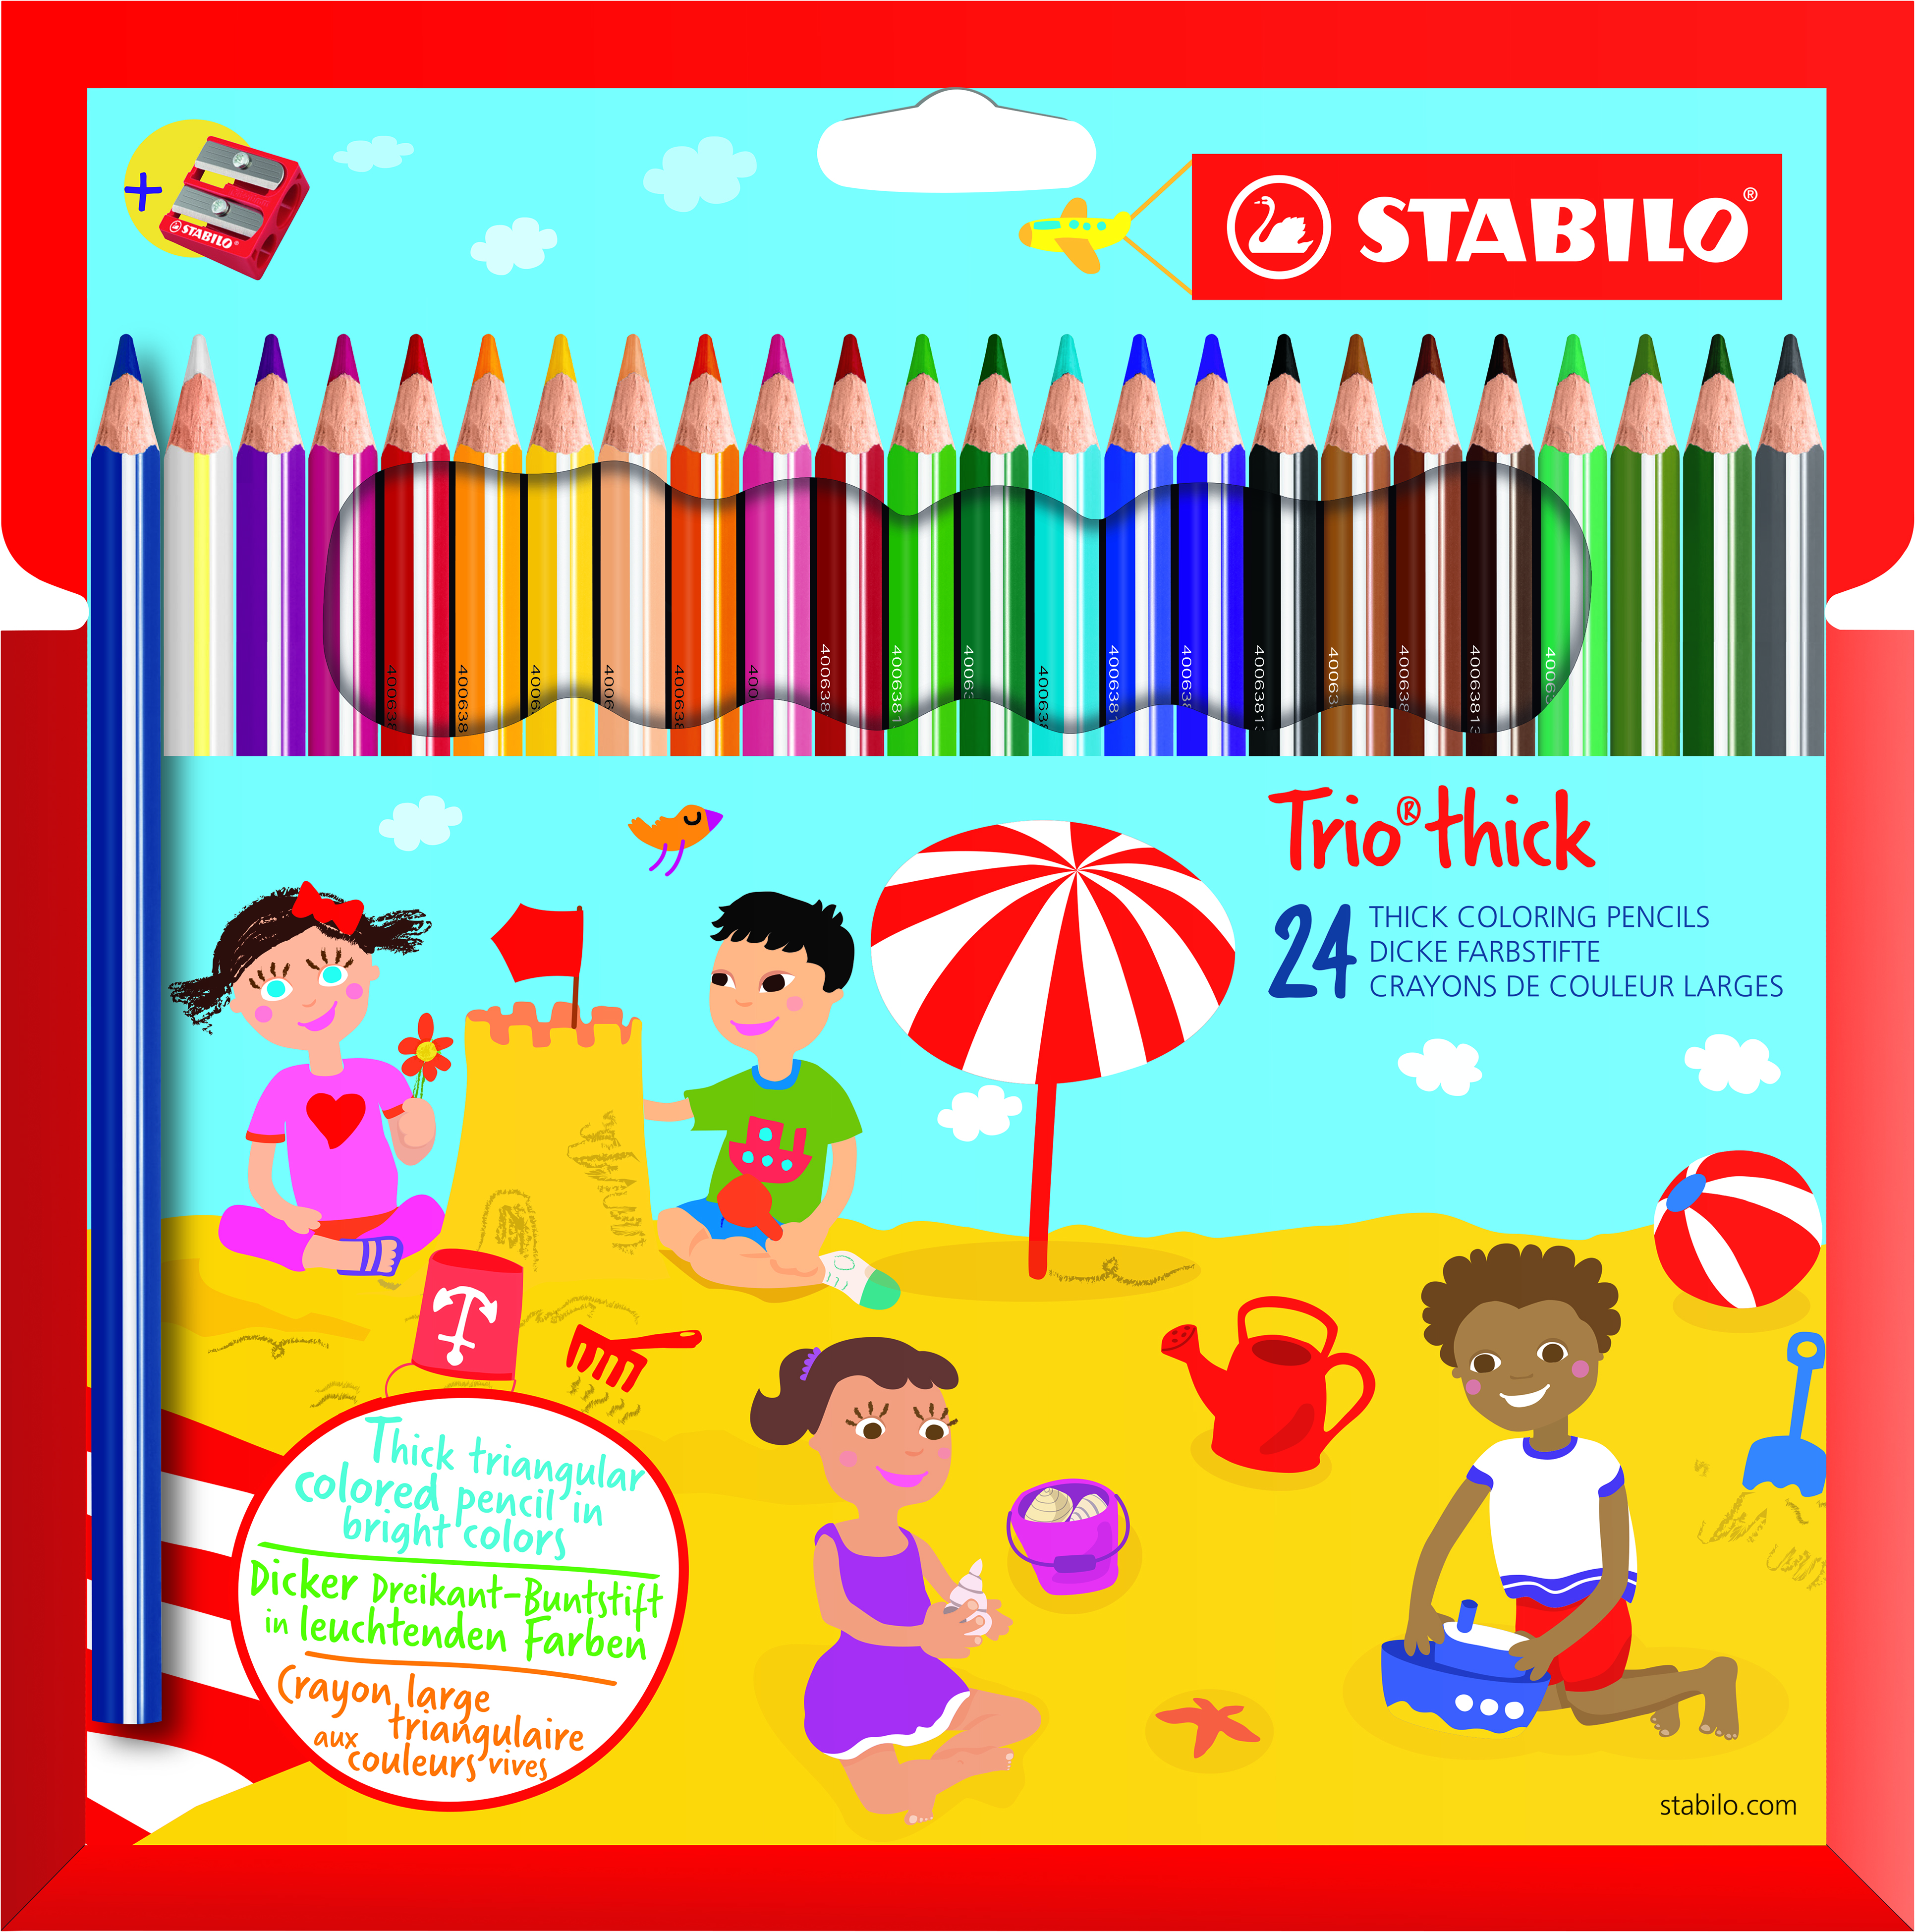 Astuccio cartone 12 matite colorate triangolari Children of the World + 3  matite colorate bicolor